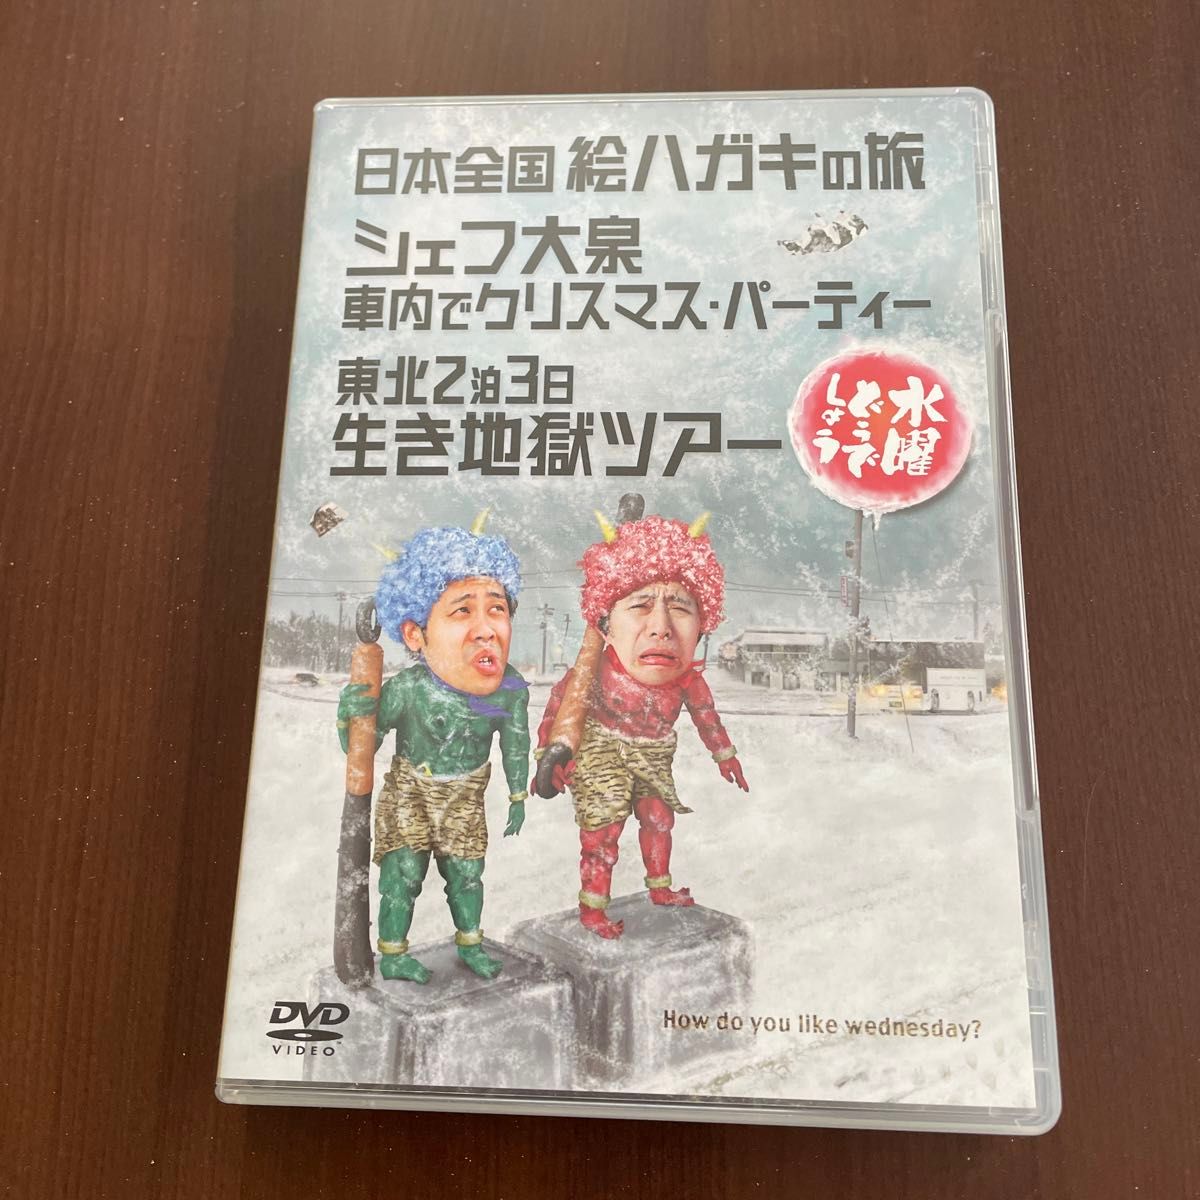 水曜どうでしょう DVD 第13弾 日本全国絵ハガキの旅/シェフ大泉 車内でクリスマスパーティー/おまけ付き